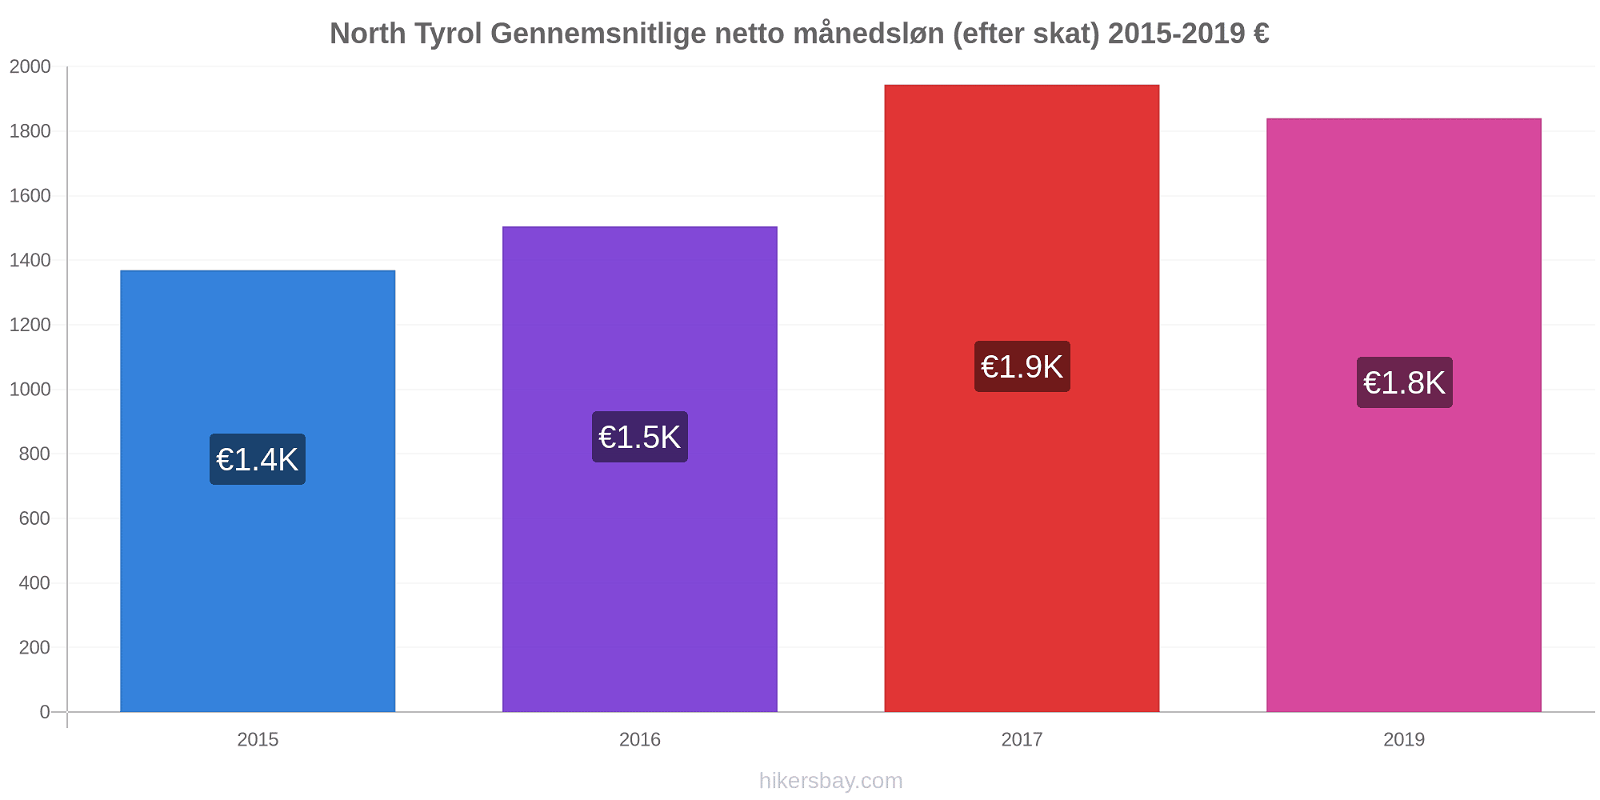 North Tyrol prisændringer Gennemsnitlige netto månedsløn (efter skat) hikersbay.com